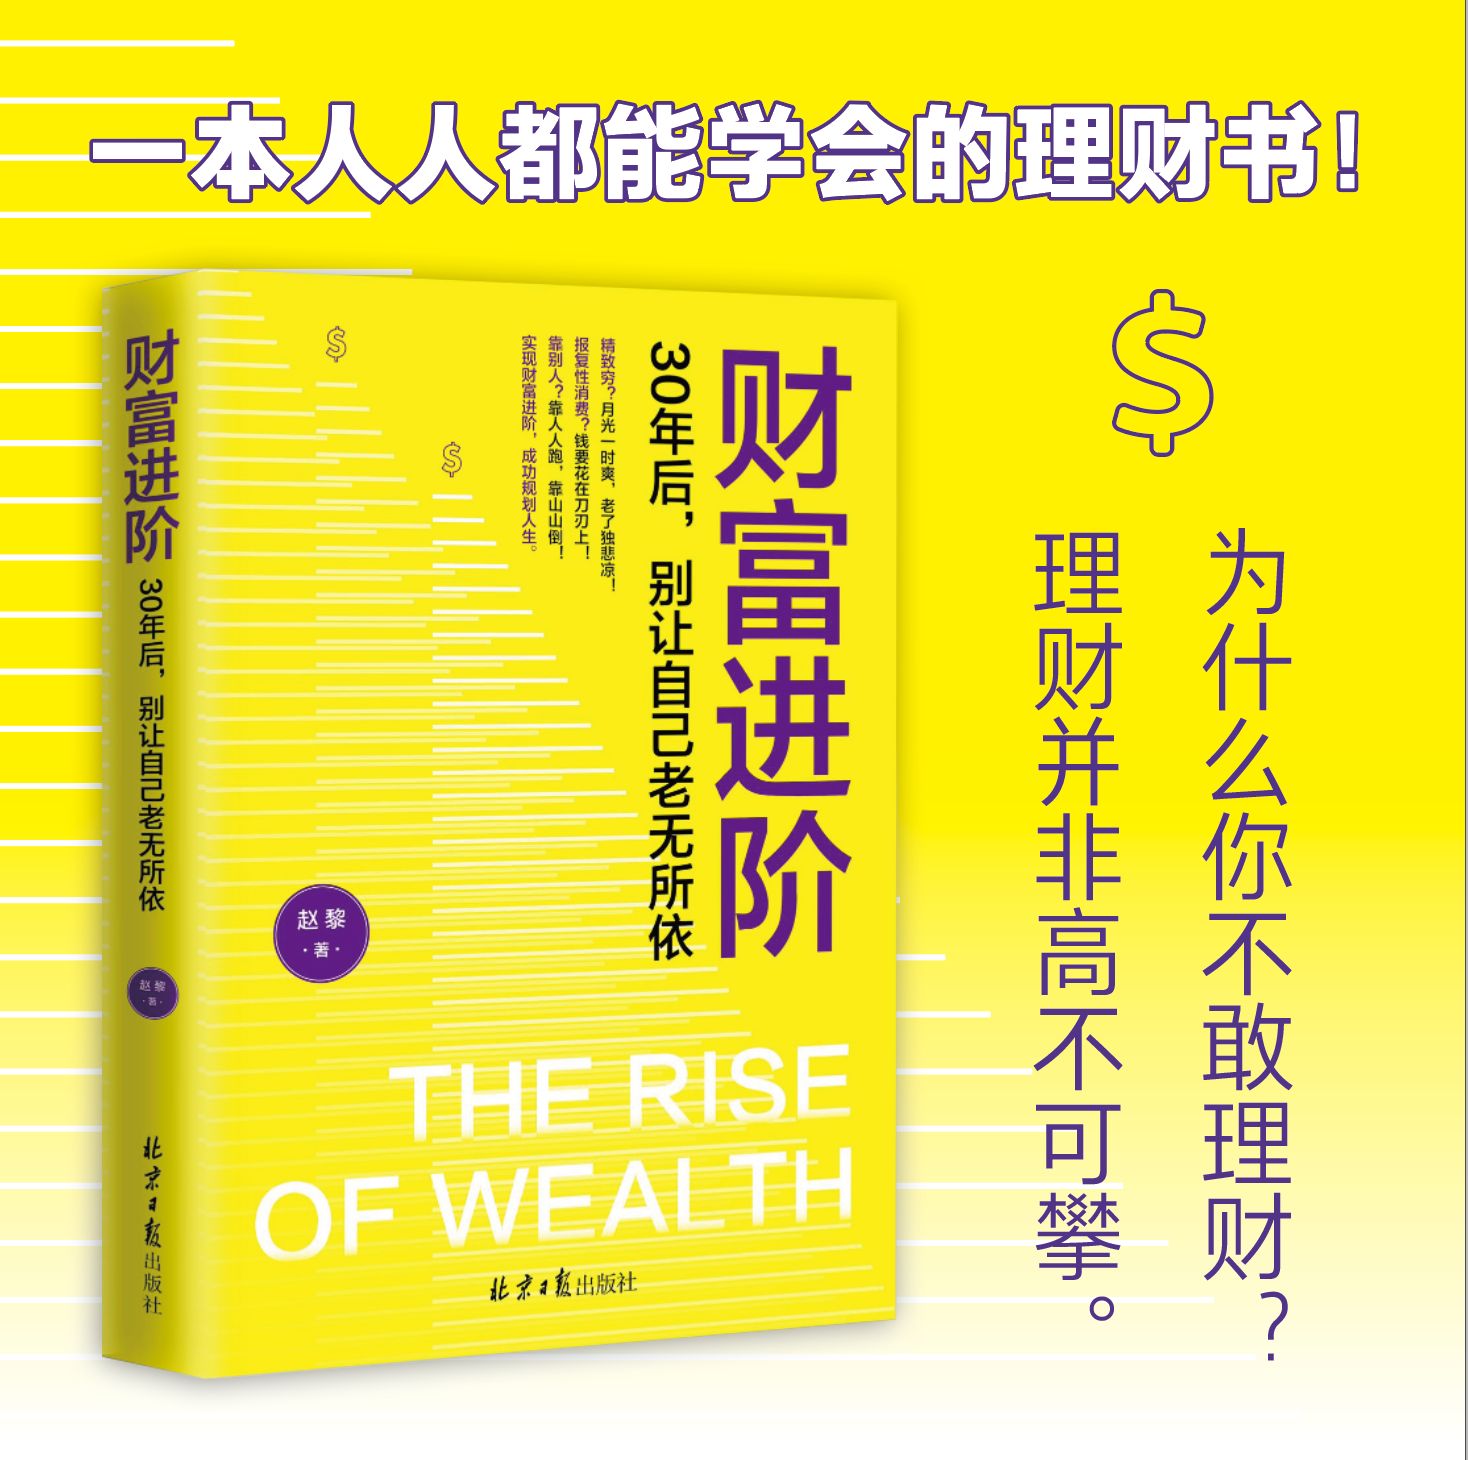 财富进阶 30年后 别让自己老无所依 经济金融书籍 赵黎 北京日报出版社 正版书籍